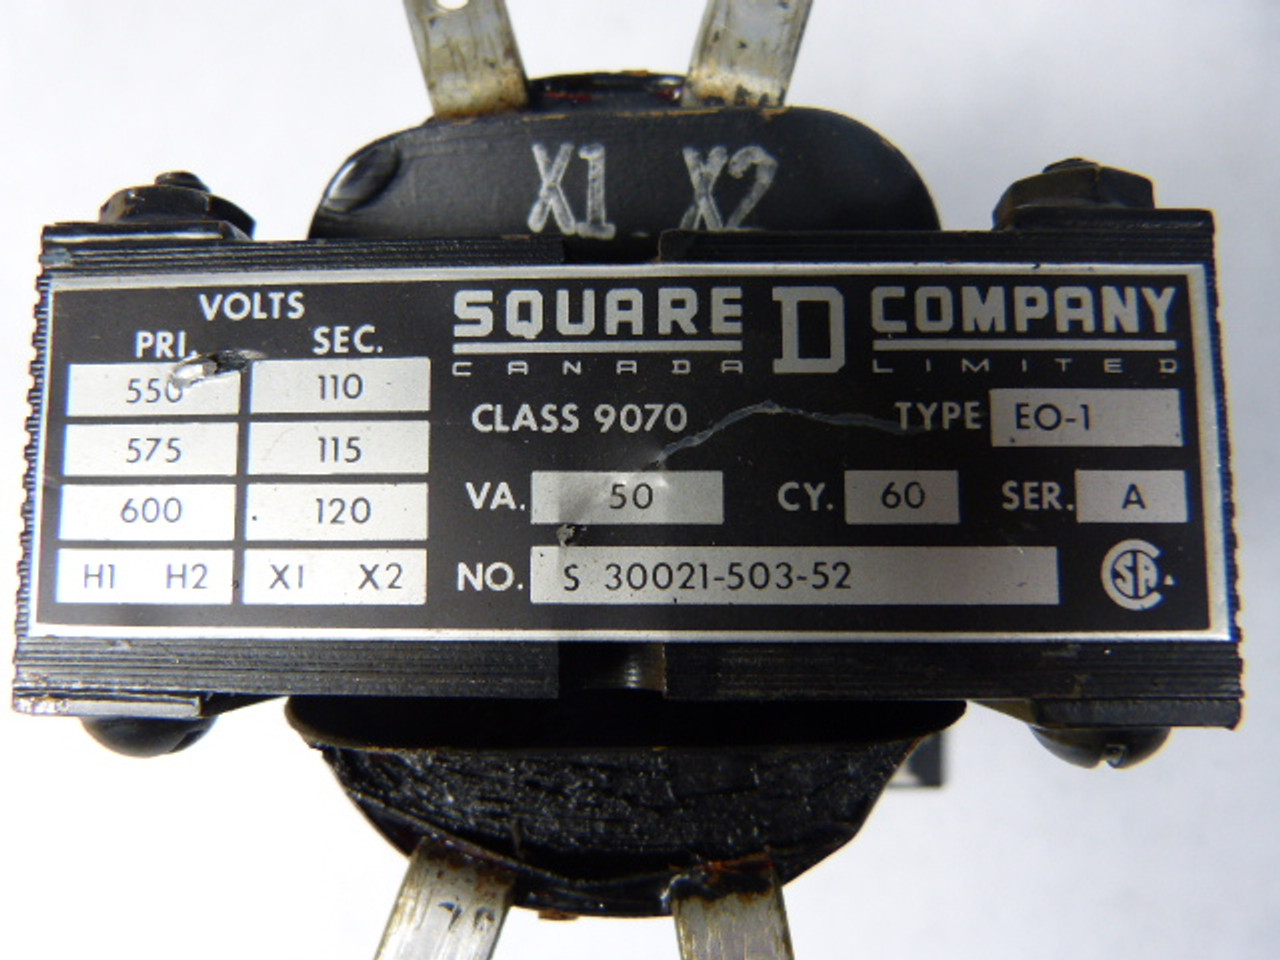 Square D S30021-503-52 Transformer Pri. 550/600V Sec. 110/120V 50Va USED